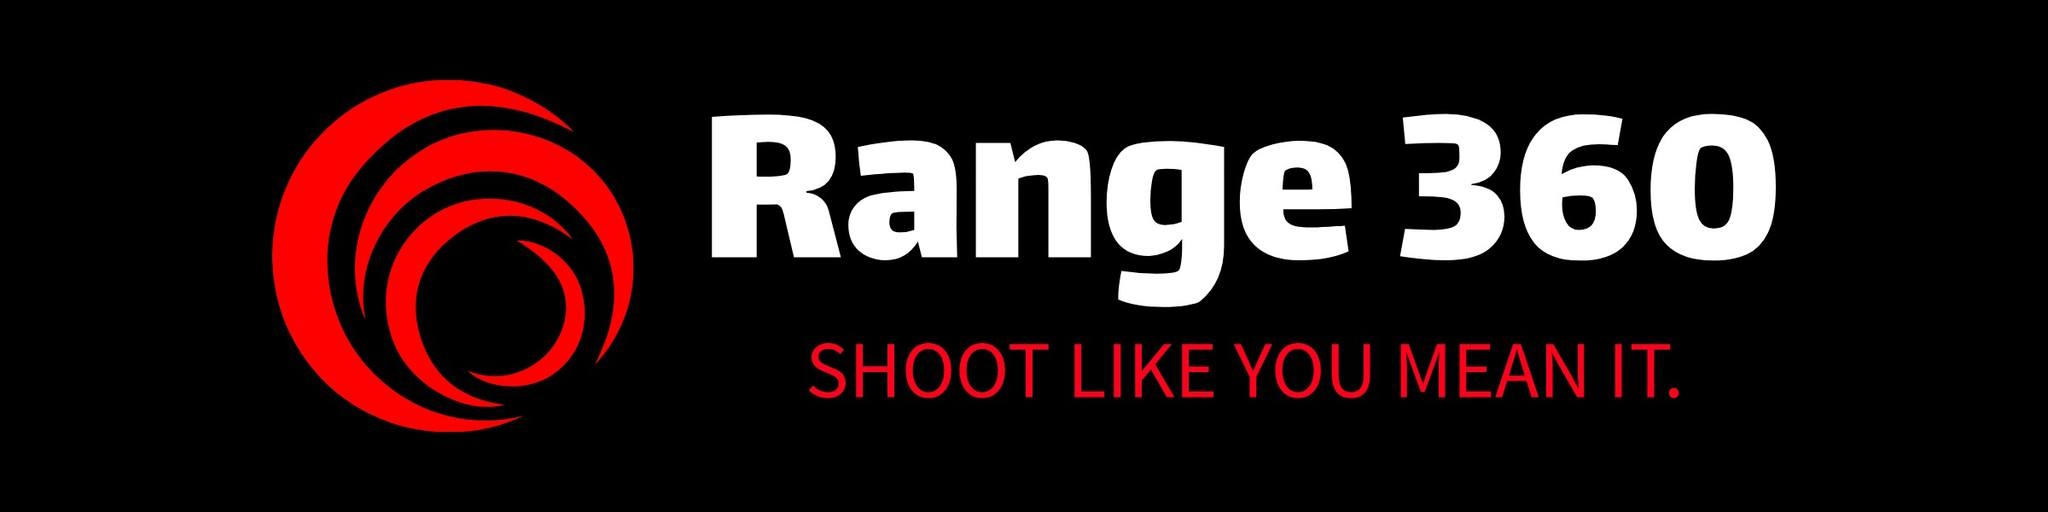 Range 360